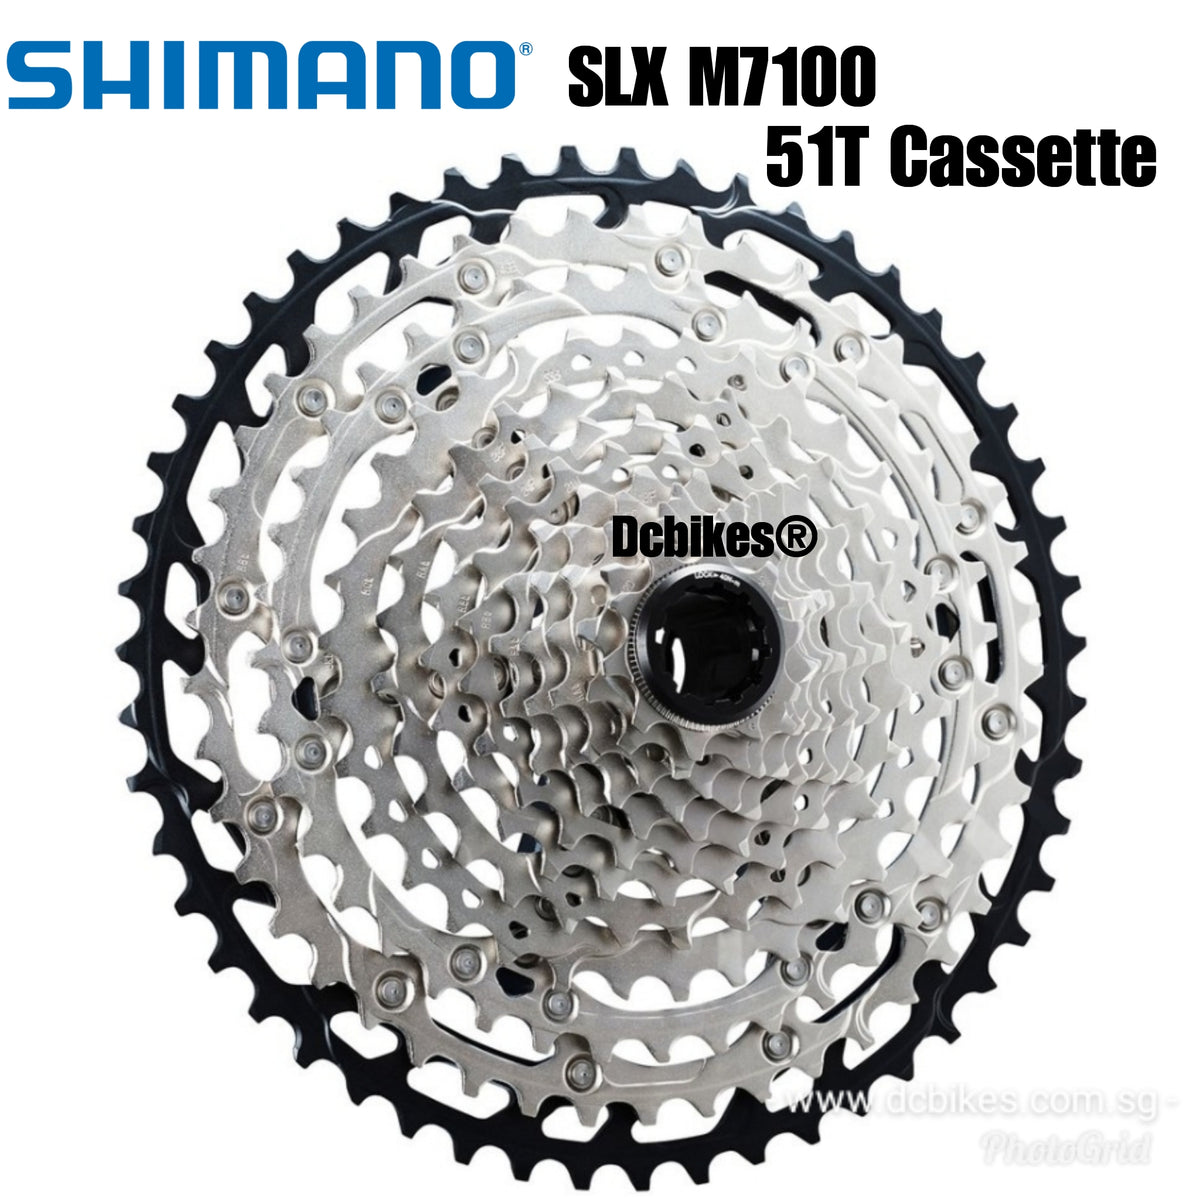 Cassette 12v Shimano SLX M7100 10-45 o 10-51 